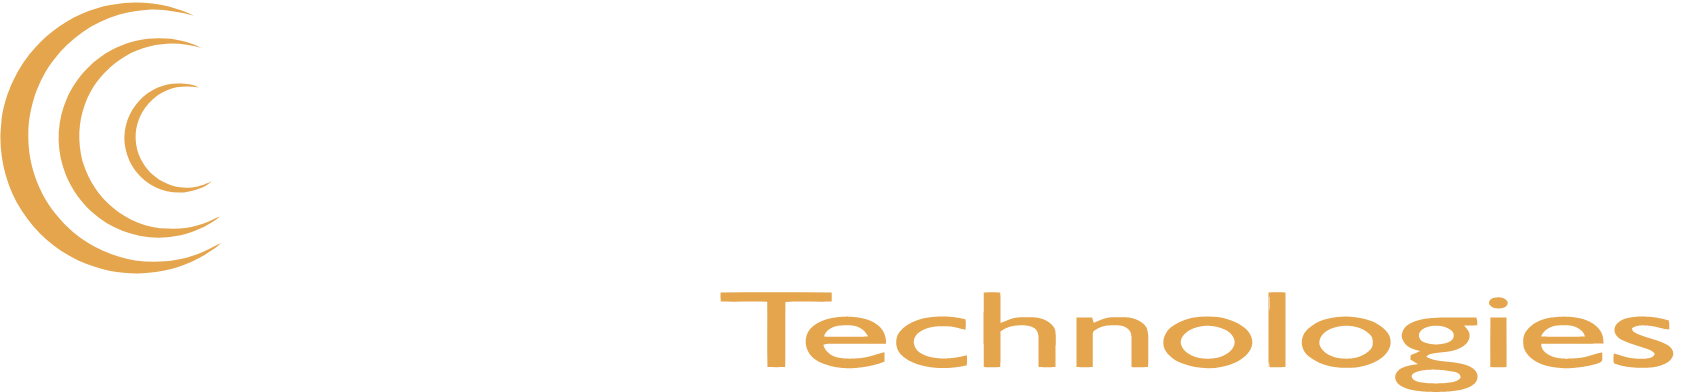 LightPath Technologies logo large for dark backgrounds (transparent PNG)